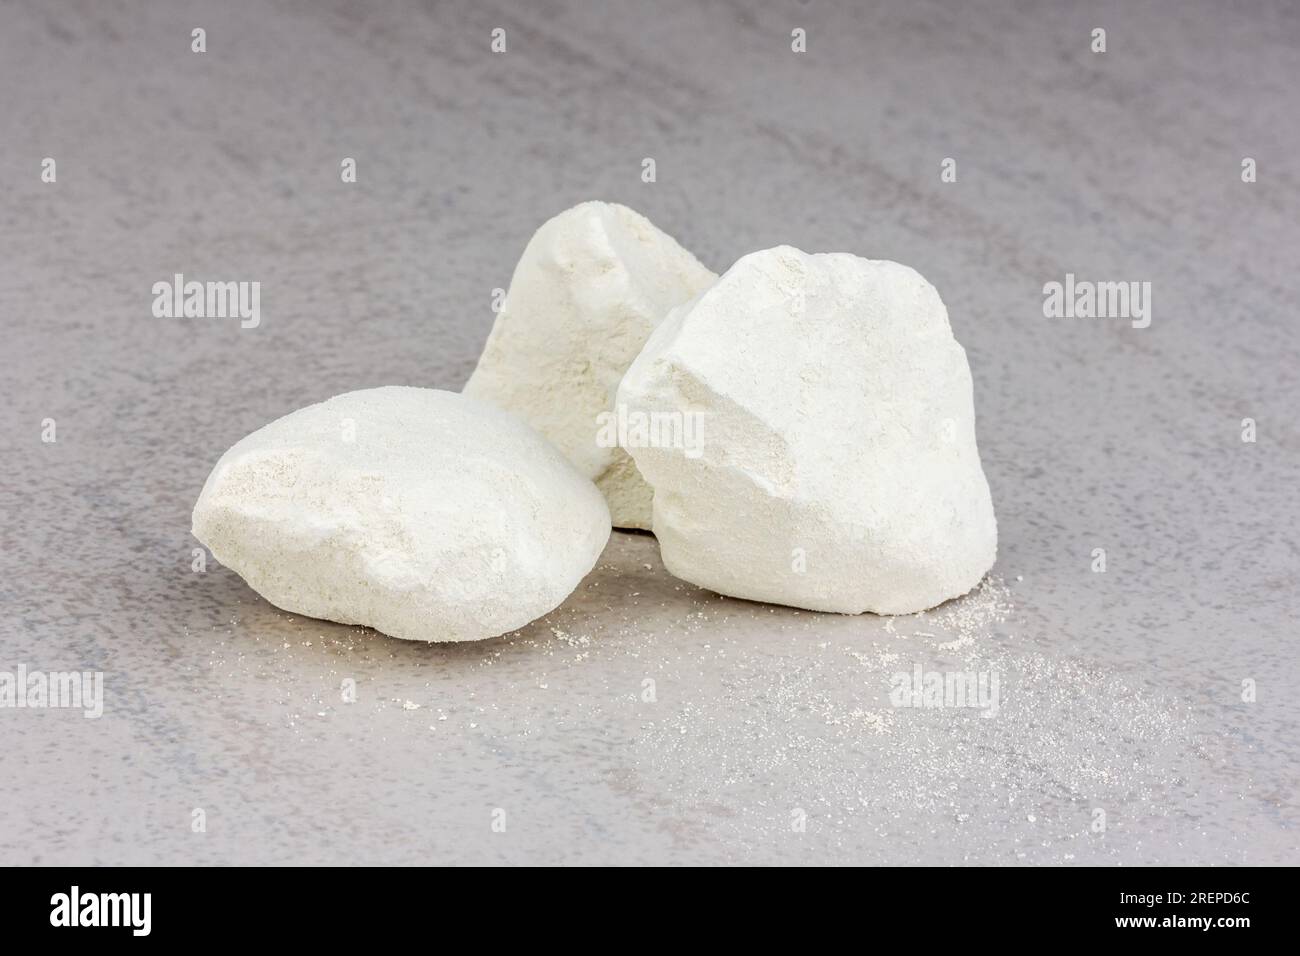 gros plan de morceaux blancs de chaux vive sur fond gris Photo Stock - Alamy